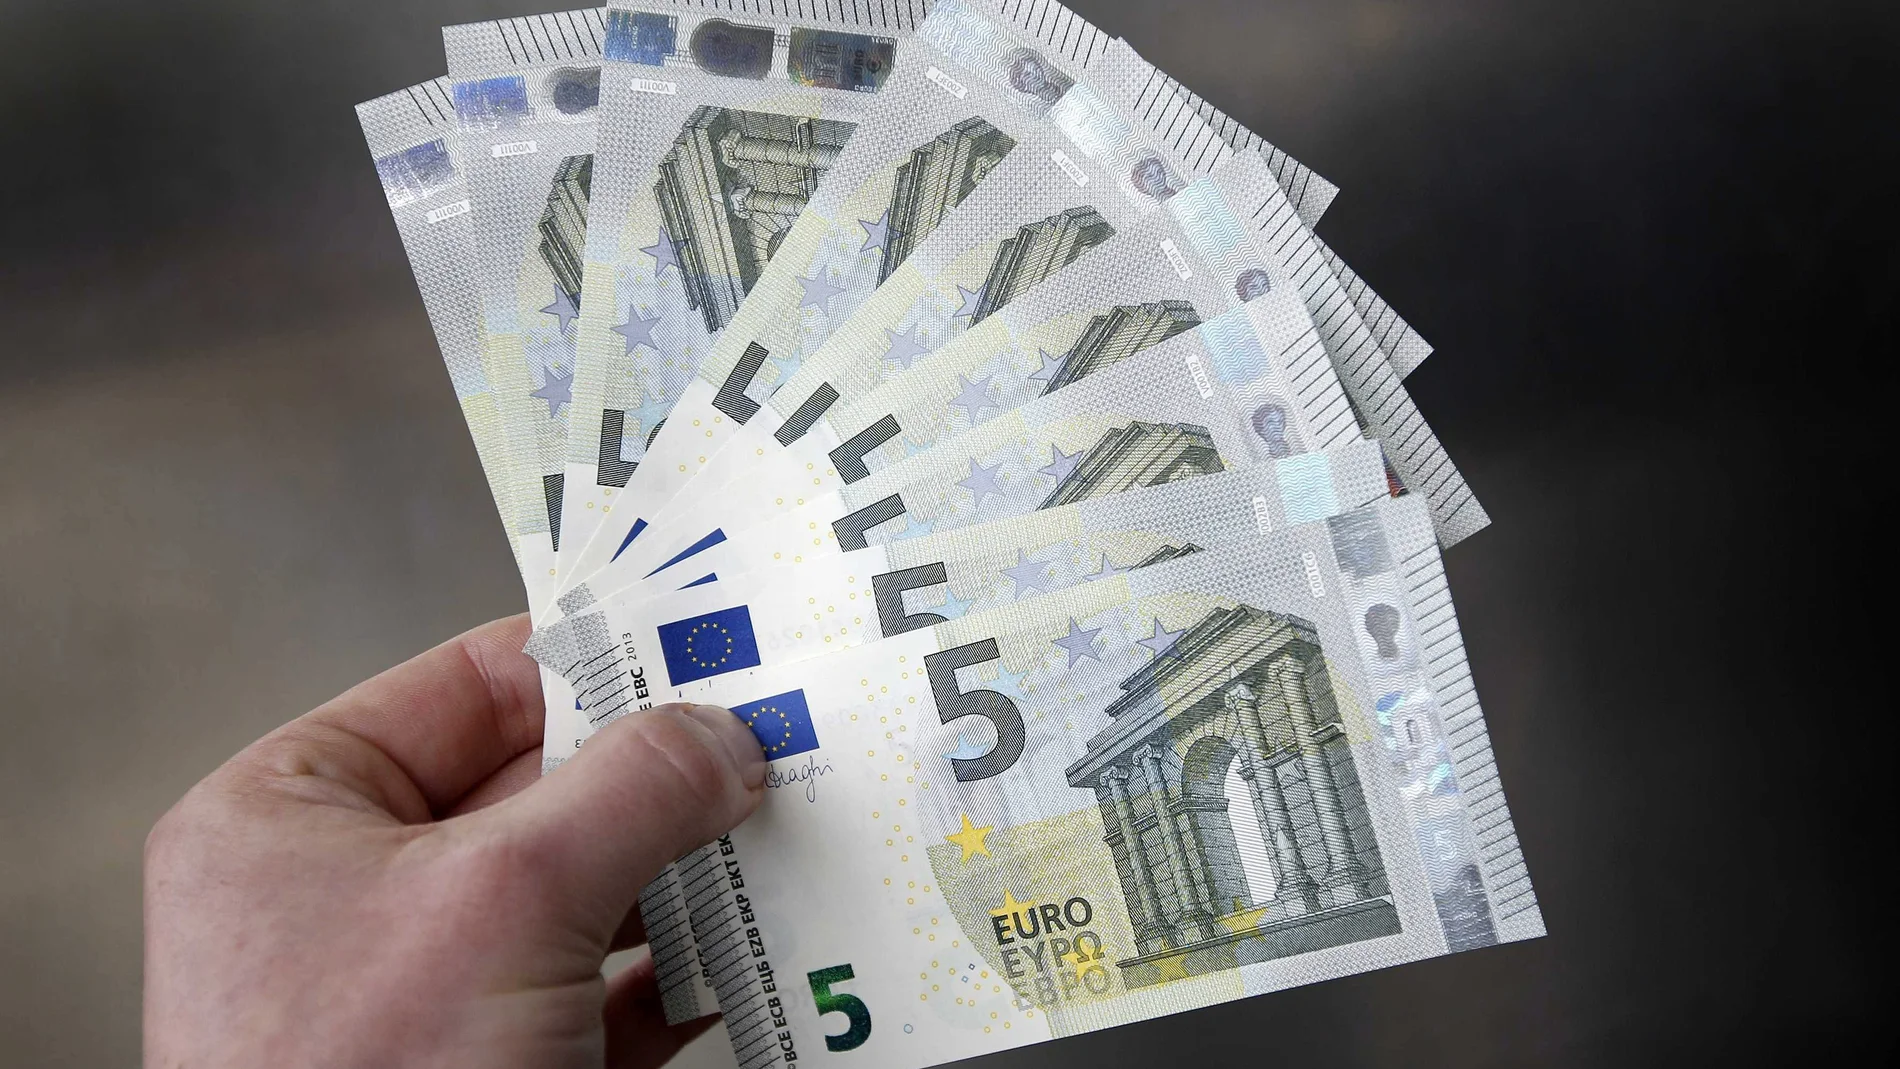 Imaagen de archivo de billetes auténticos de cinco euros